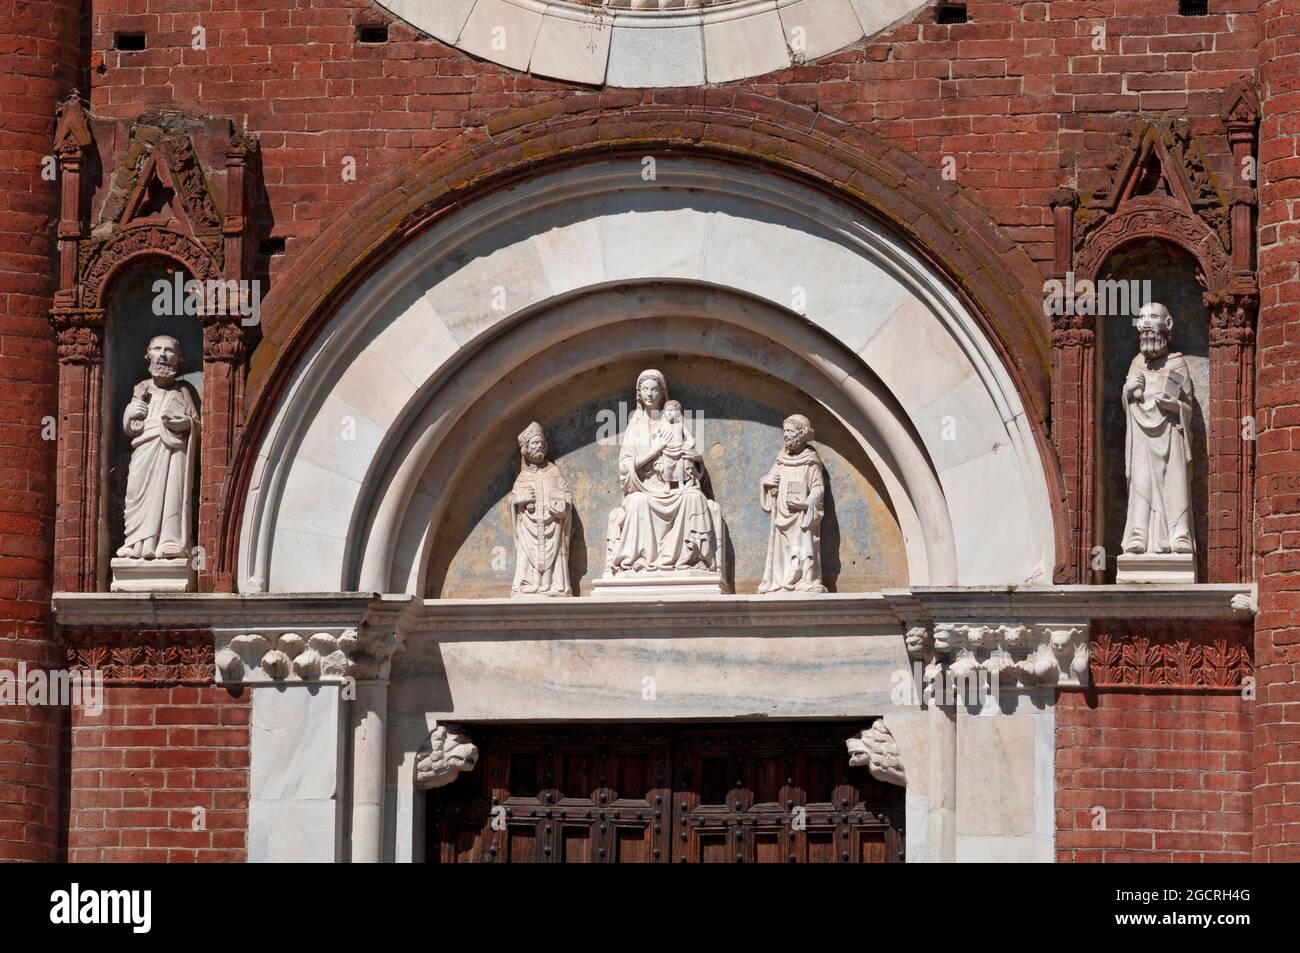 Italy, Lombardia,  San Giuliano Milanese, Viboldone Abbey, Statue of Virgin Mary with Baby Jesus Stock Photo